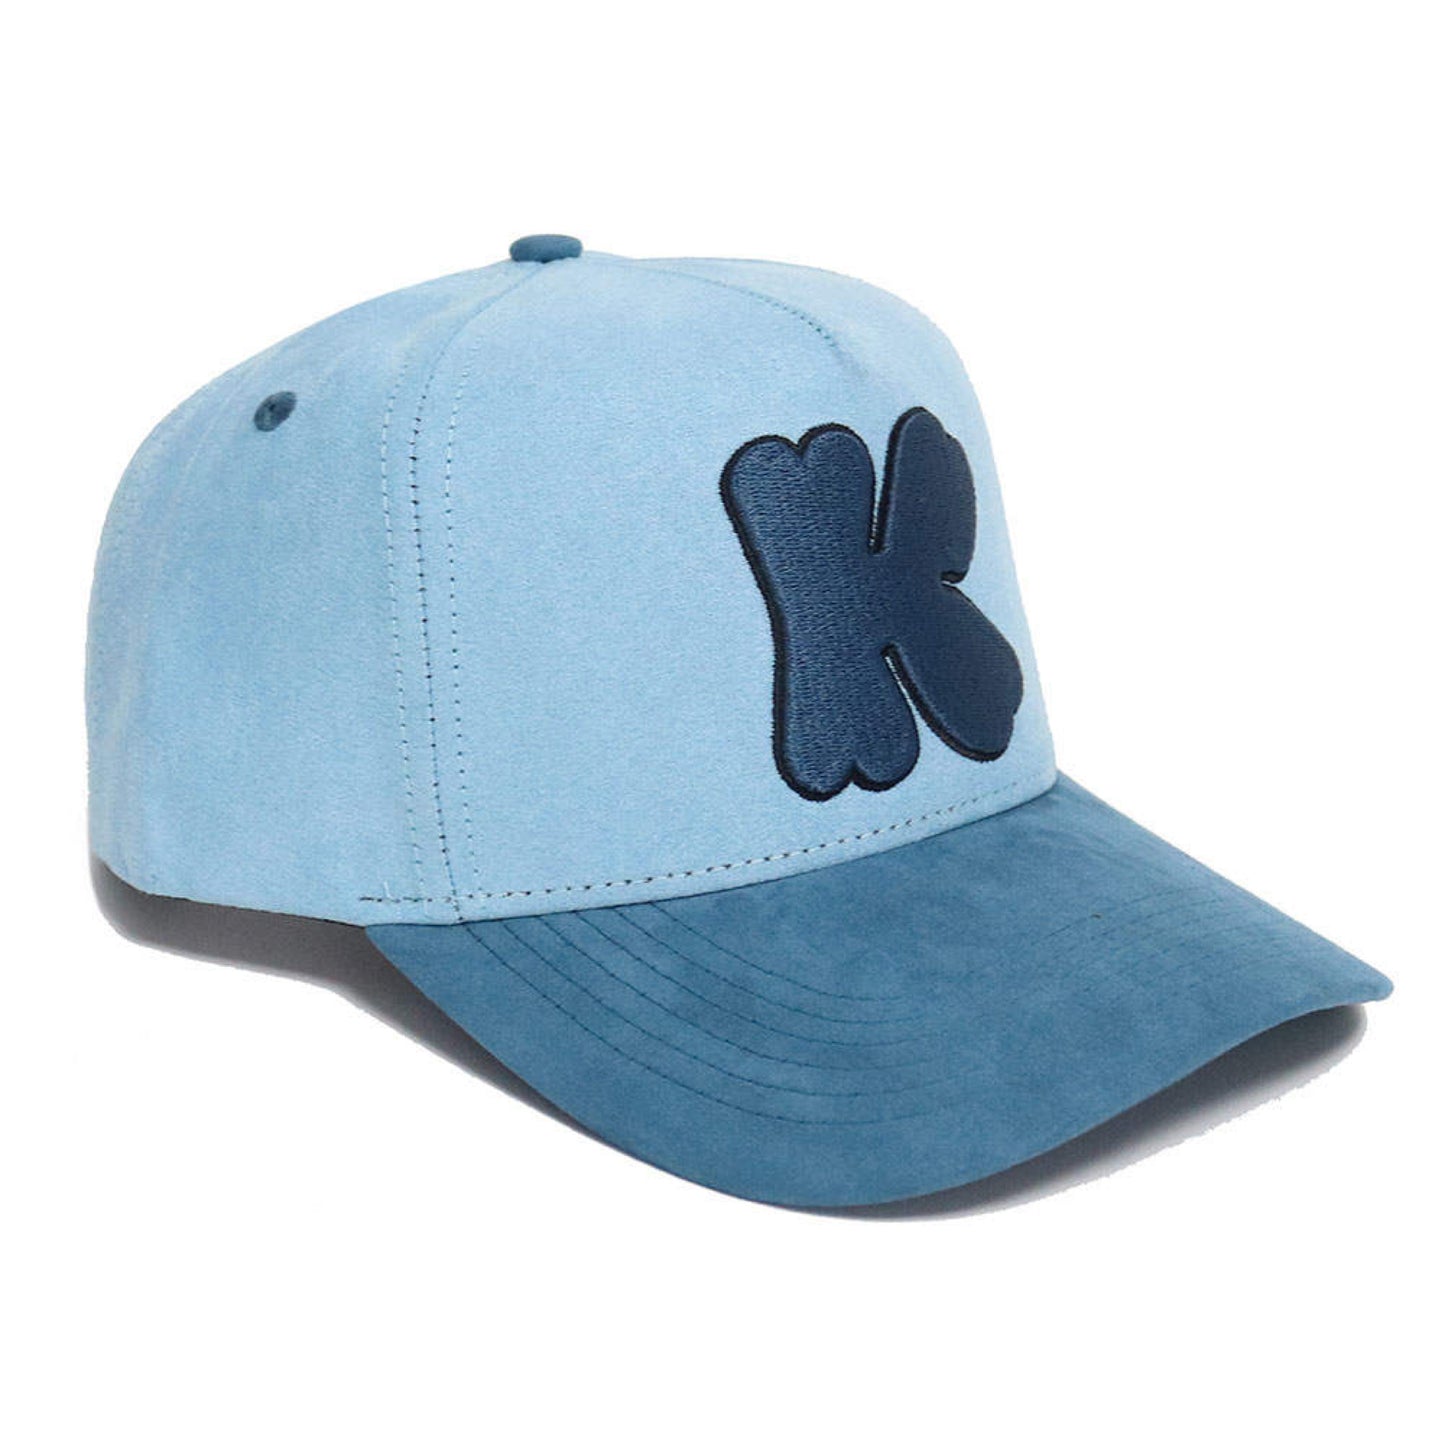 Klover "Blue Tint" Adjustable Hat